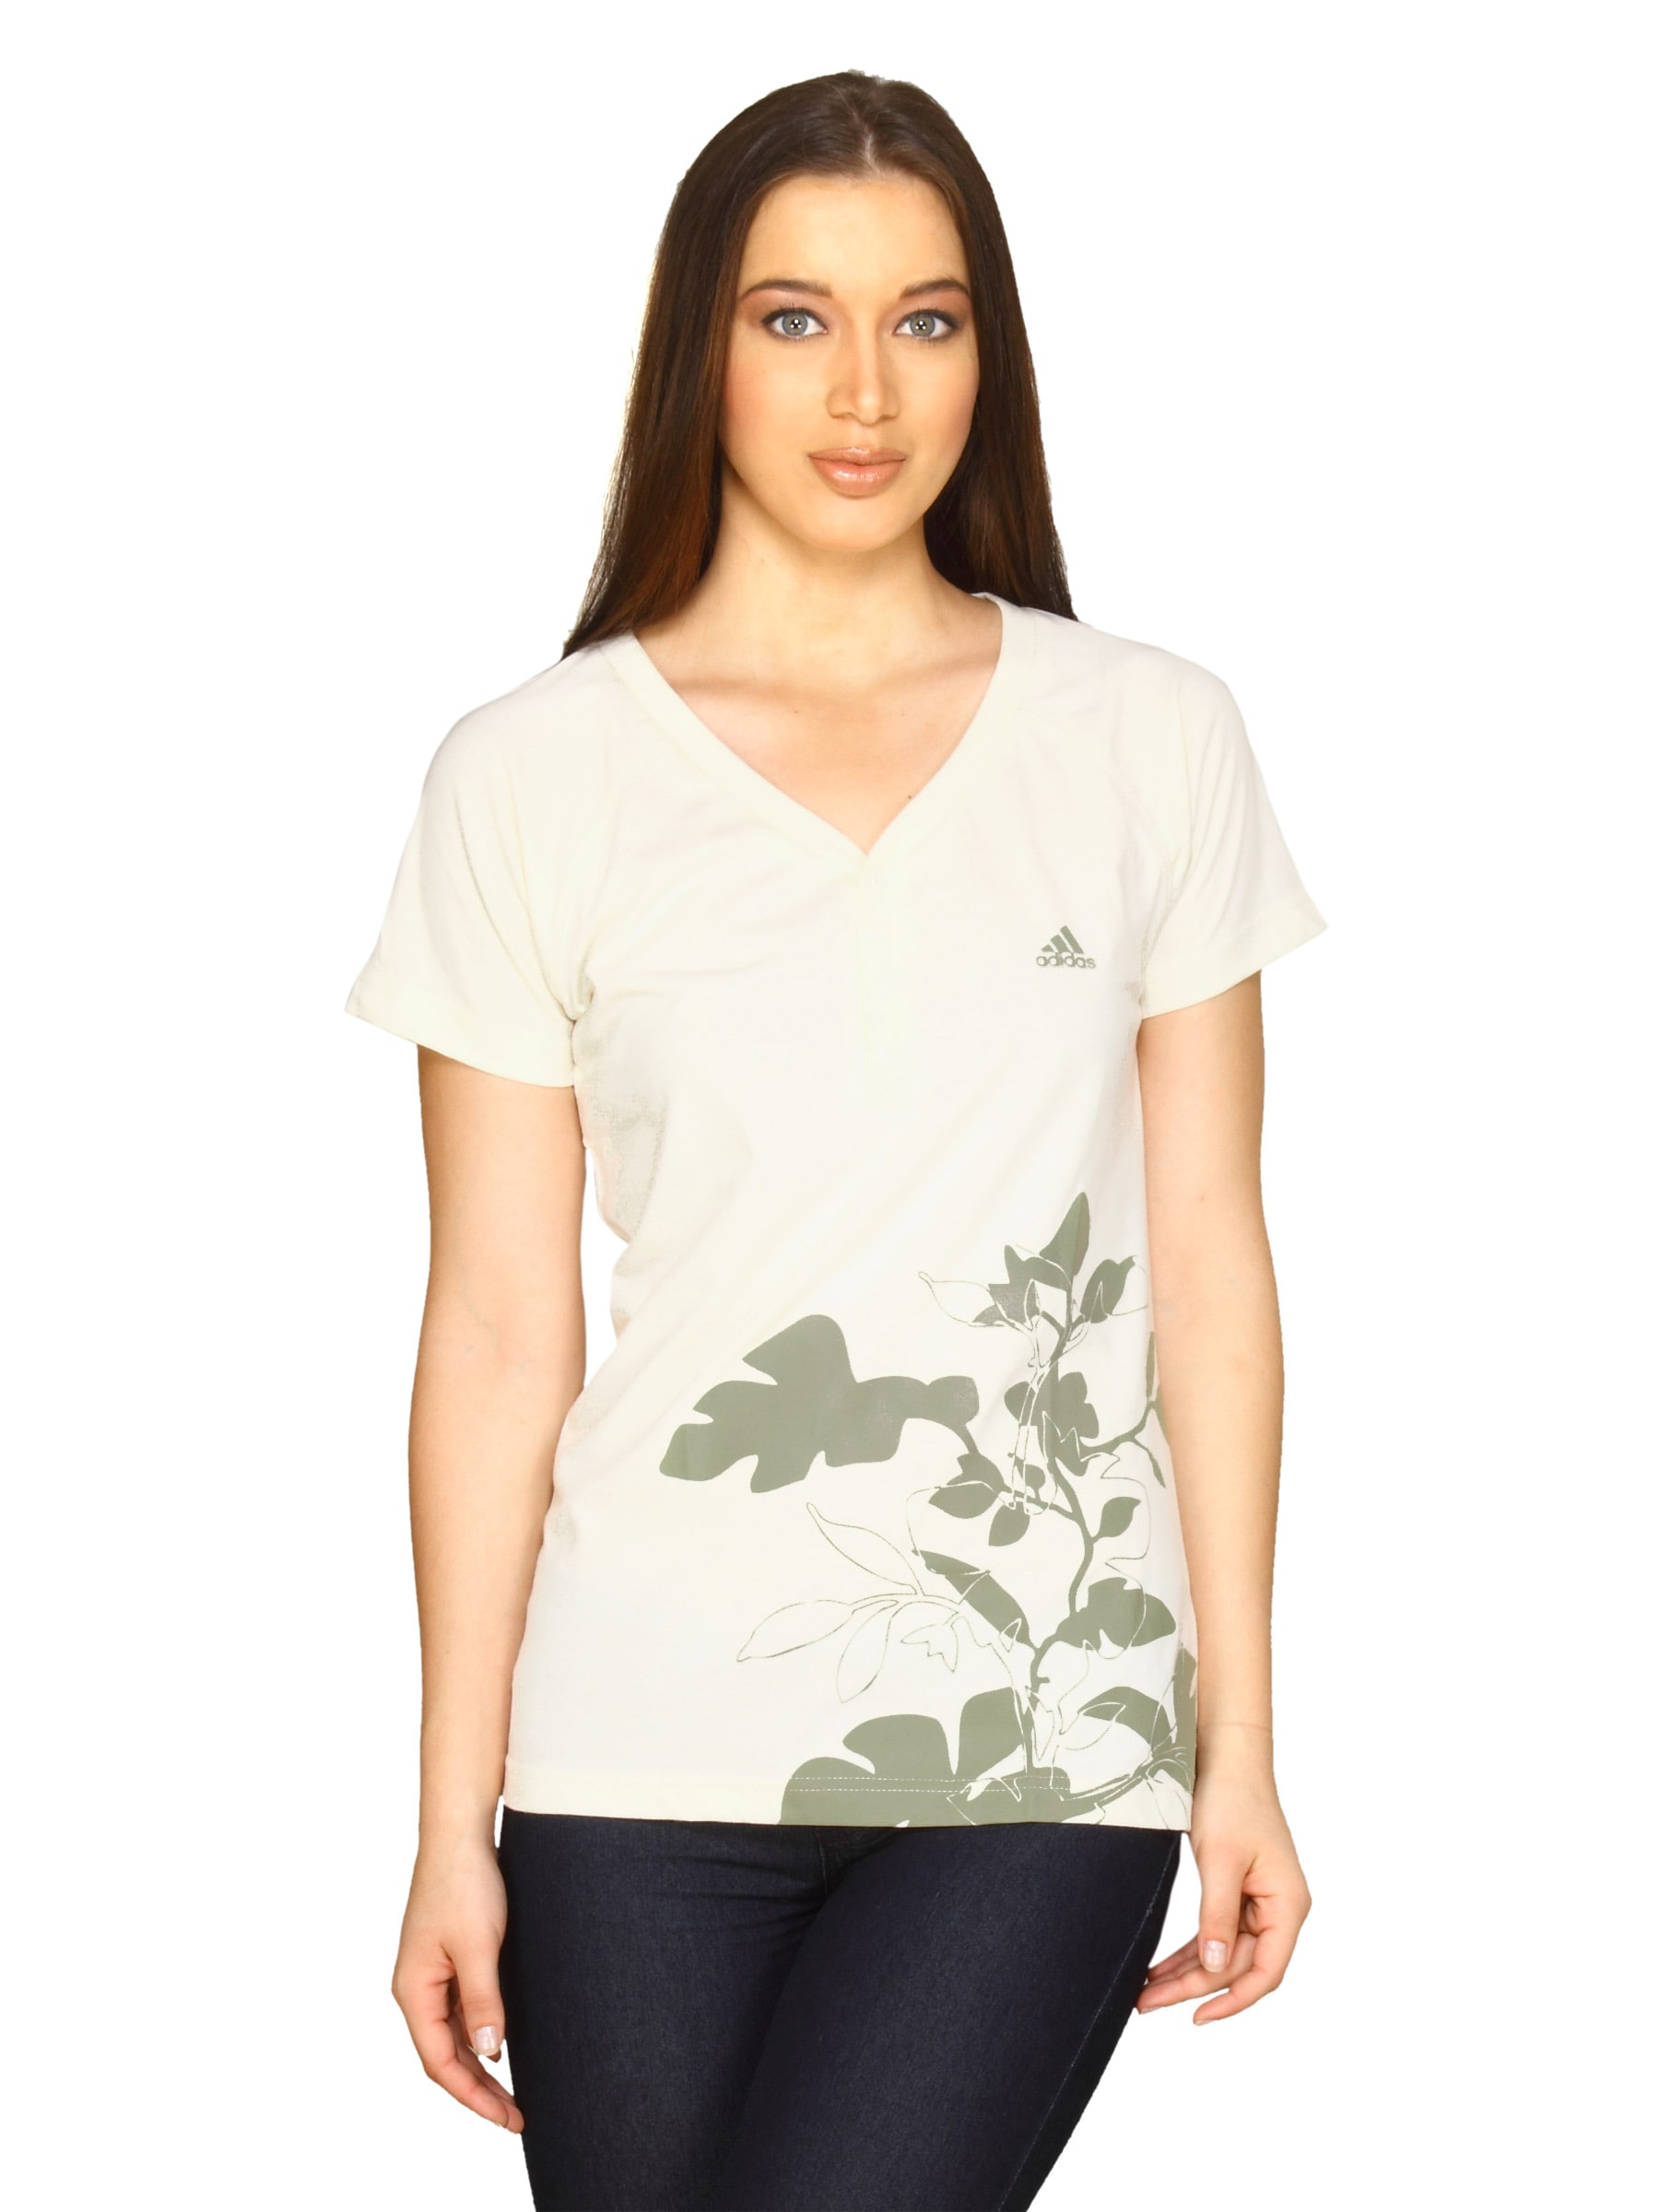 ADIDAS Women Graphic White T-shirt